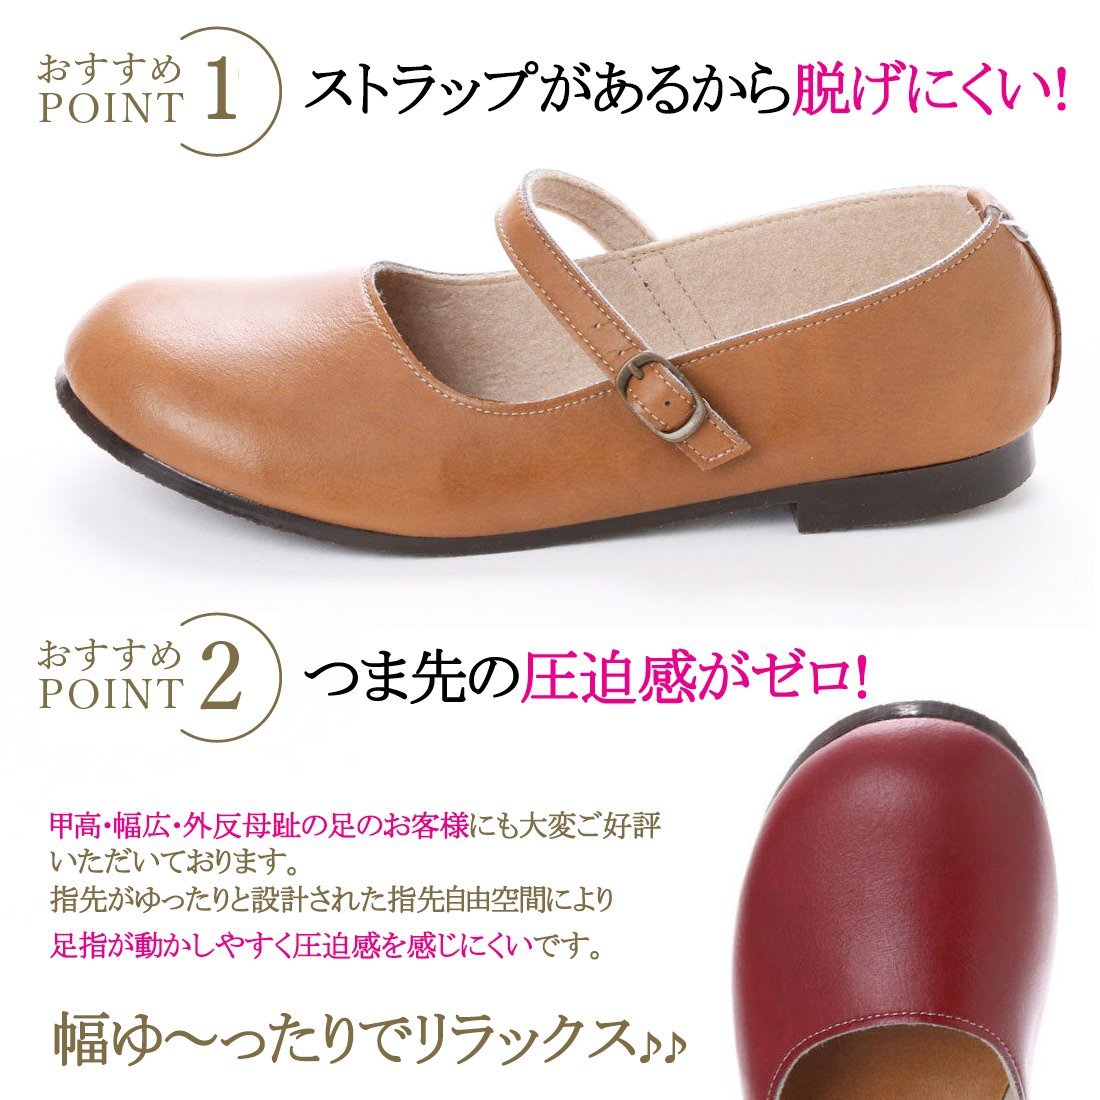 41lk бесплатная доставка по всей стране (25~25.5cm) сделано в Японии one ремешок туфли-лодочки / слоновая кость 